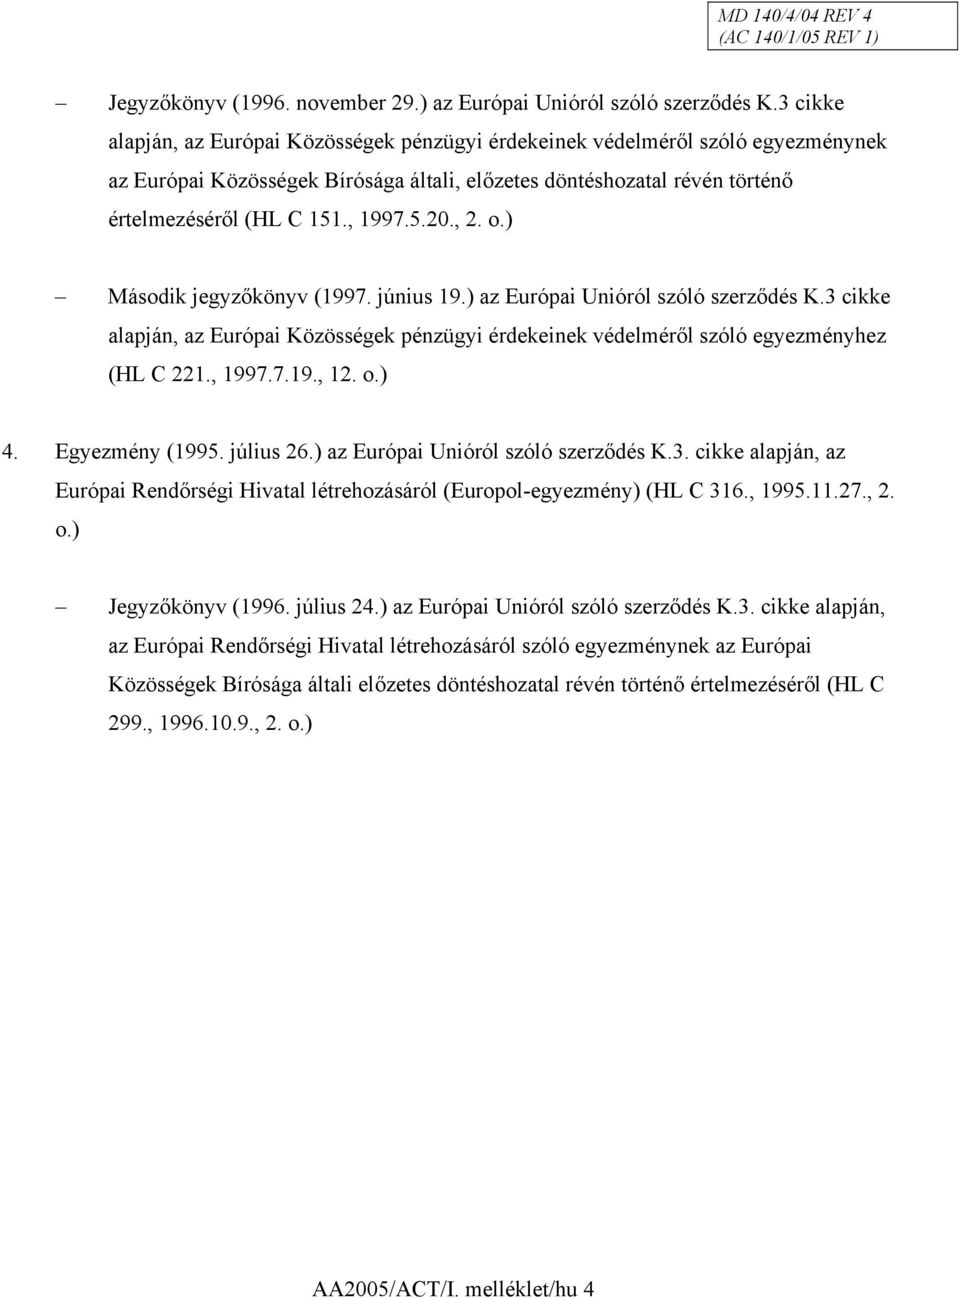 , 2. o.) Második jegyzőkönyv (1997. június 19.) az Európai Unióról szóló szerződés K.3 cikke alapján, az Európai Közösségek pénzügyi érdekeinek védelméről szóló egyezményhez (HL C 221., 1997.7.19., 12.